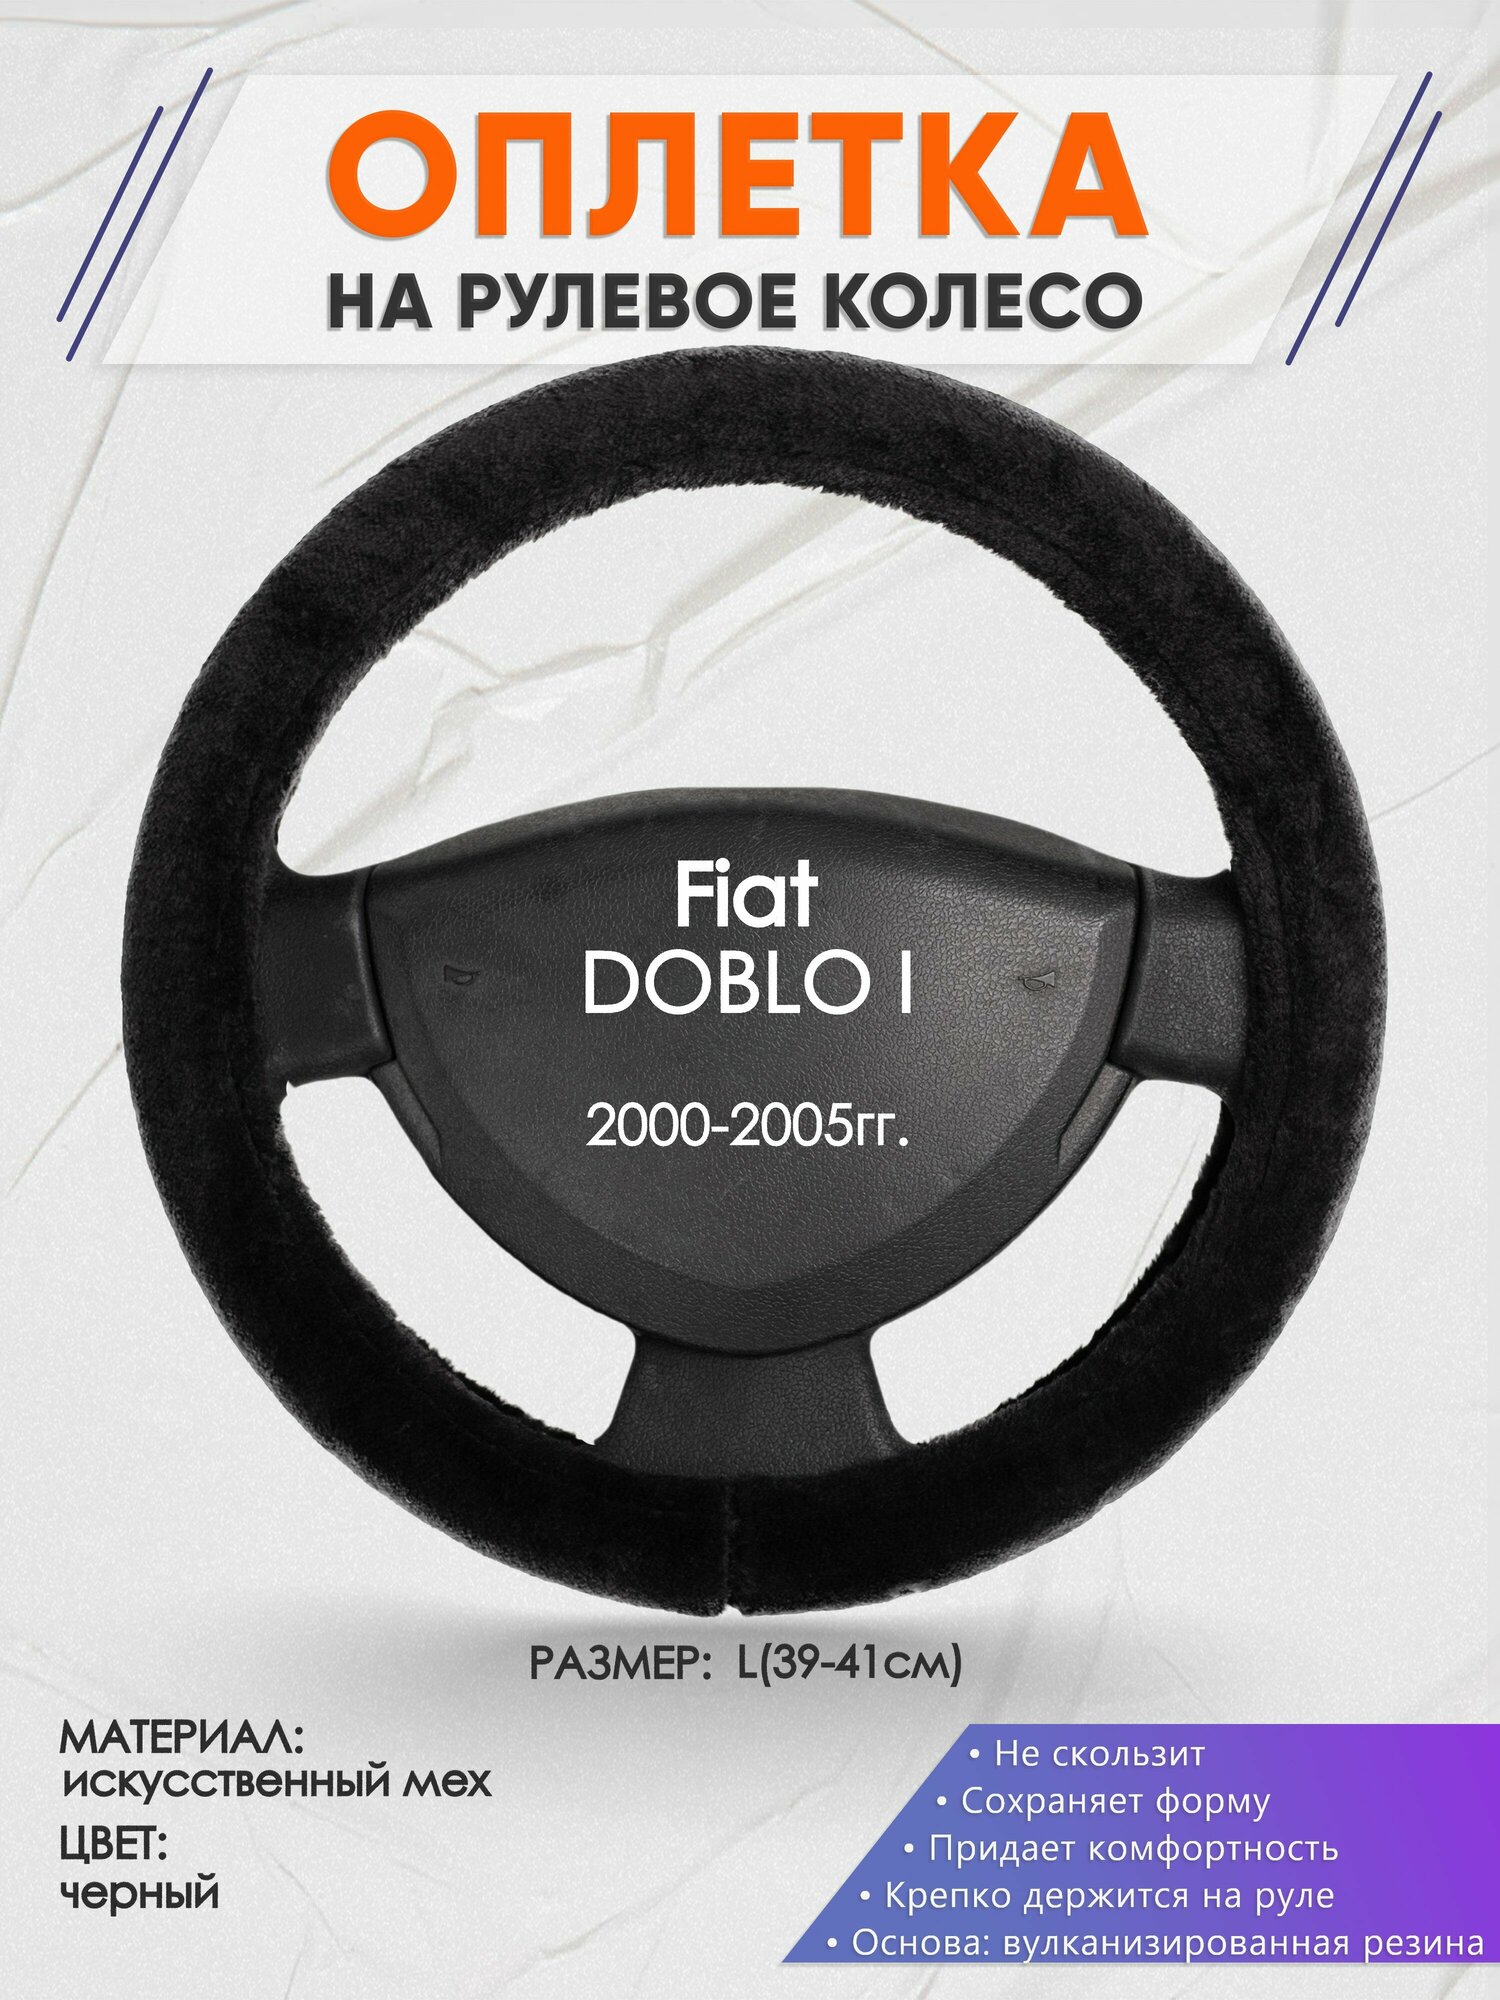 Оплетка на руль для Fiat DOBLO I(Фиат Добло) 2000-2005, L(39-41см), Искусственный мех 45